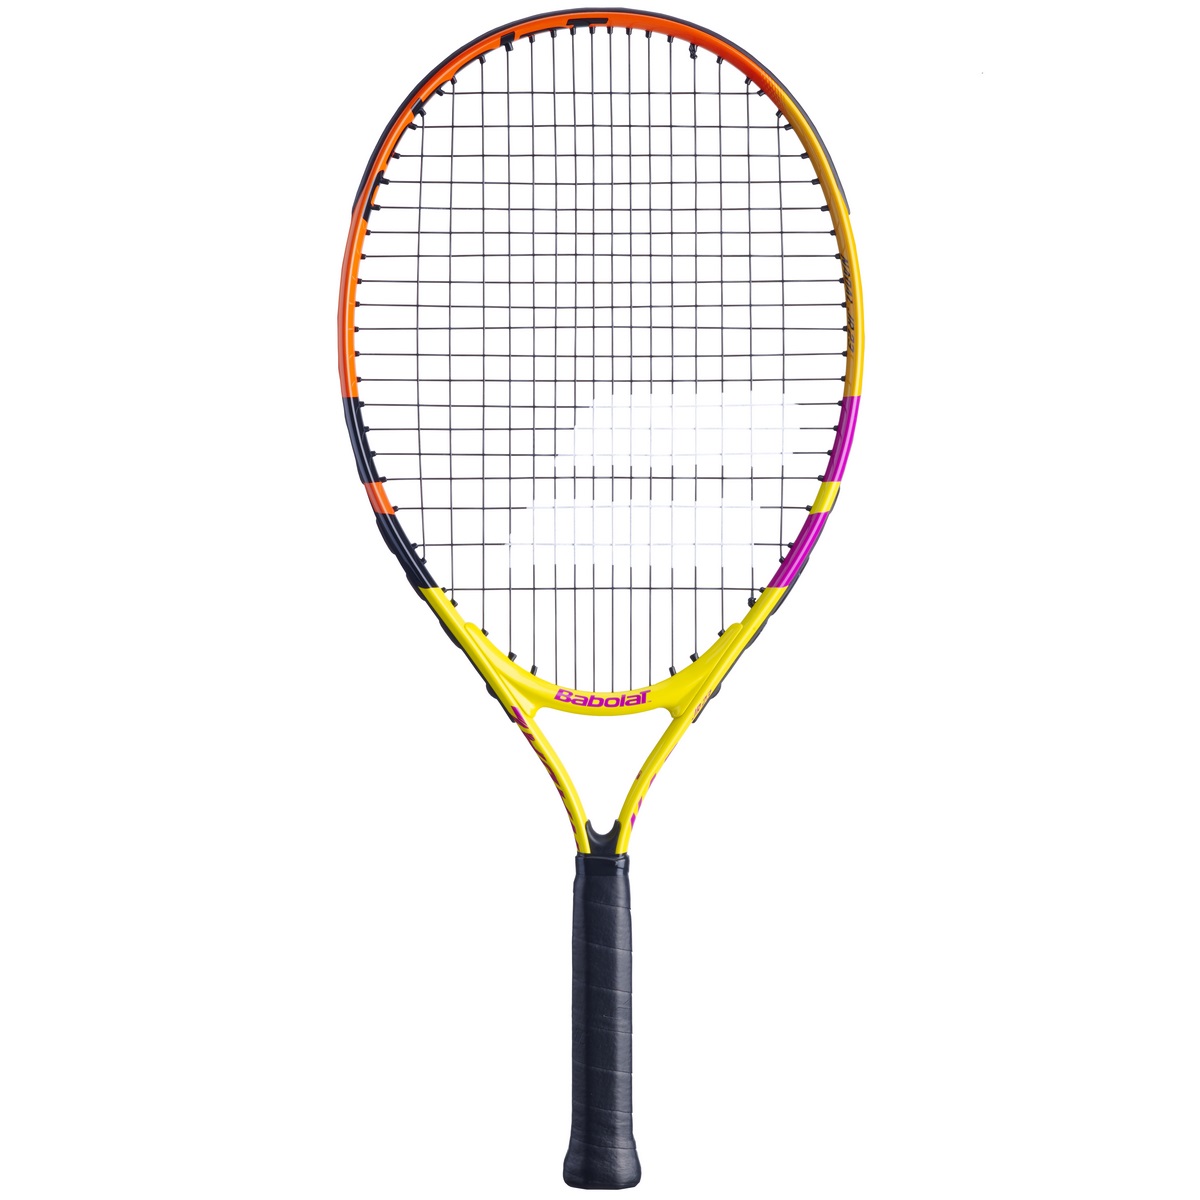 Ракетка для большого тенниса Babolat Nadal Jr 25 140457 желтый/оранжевый